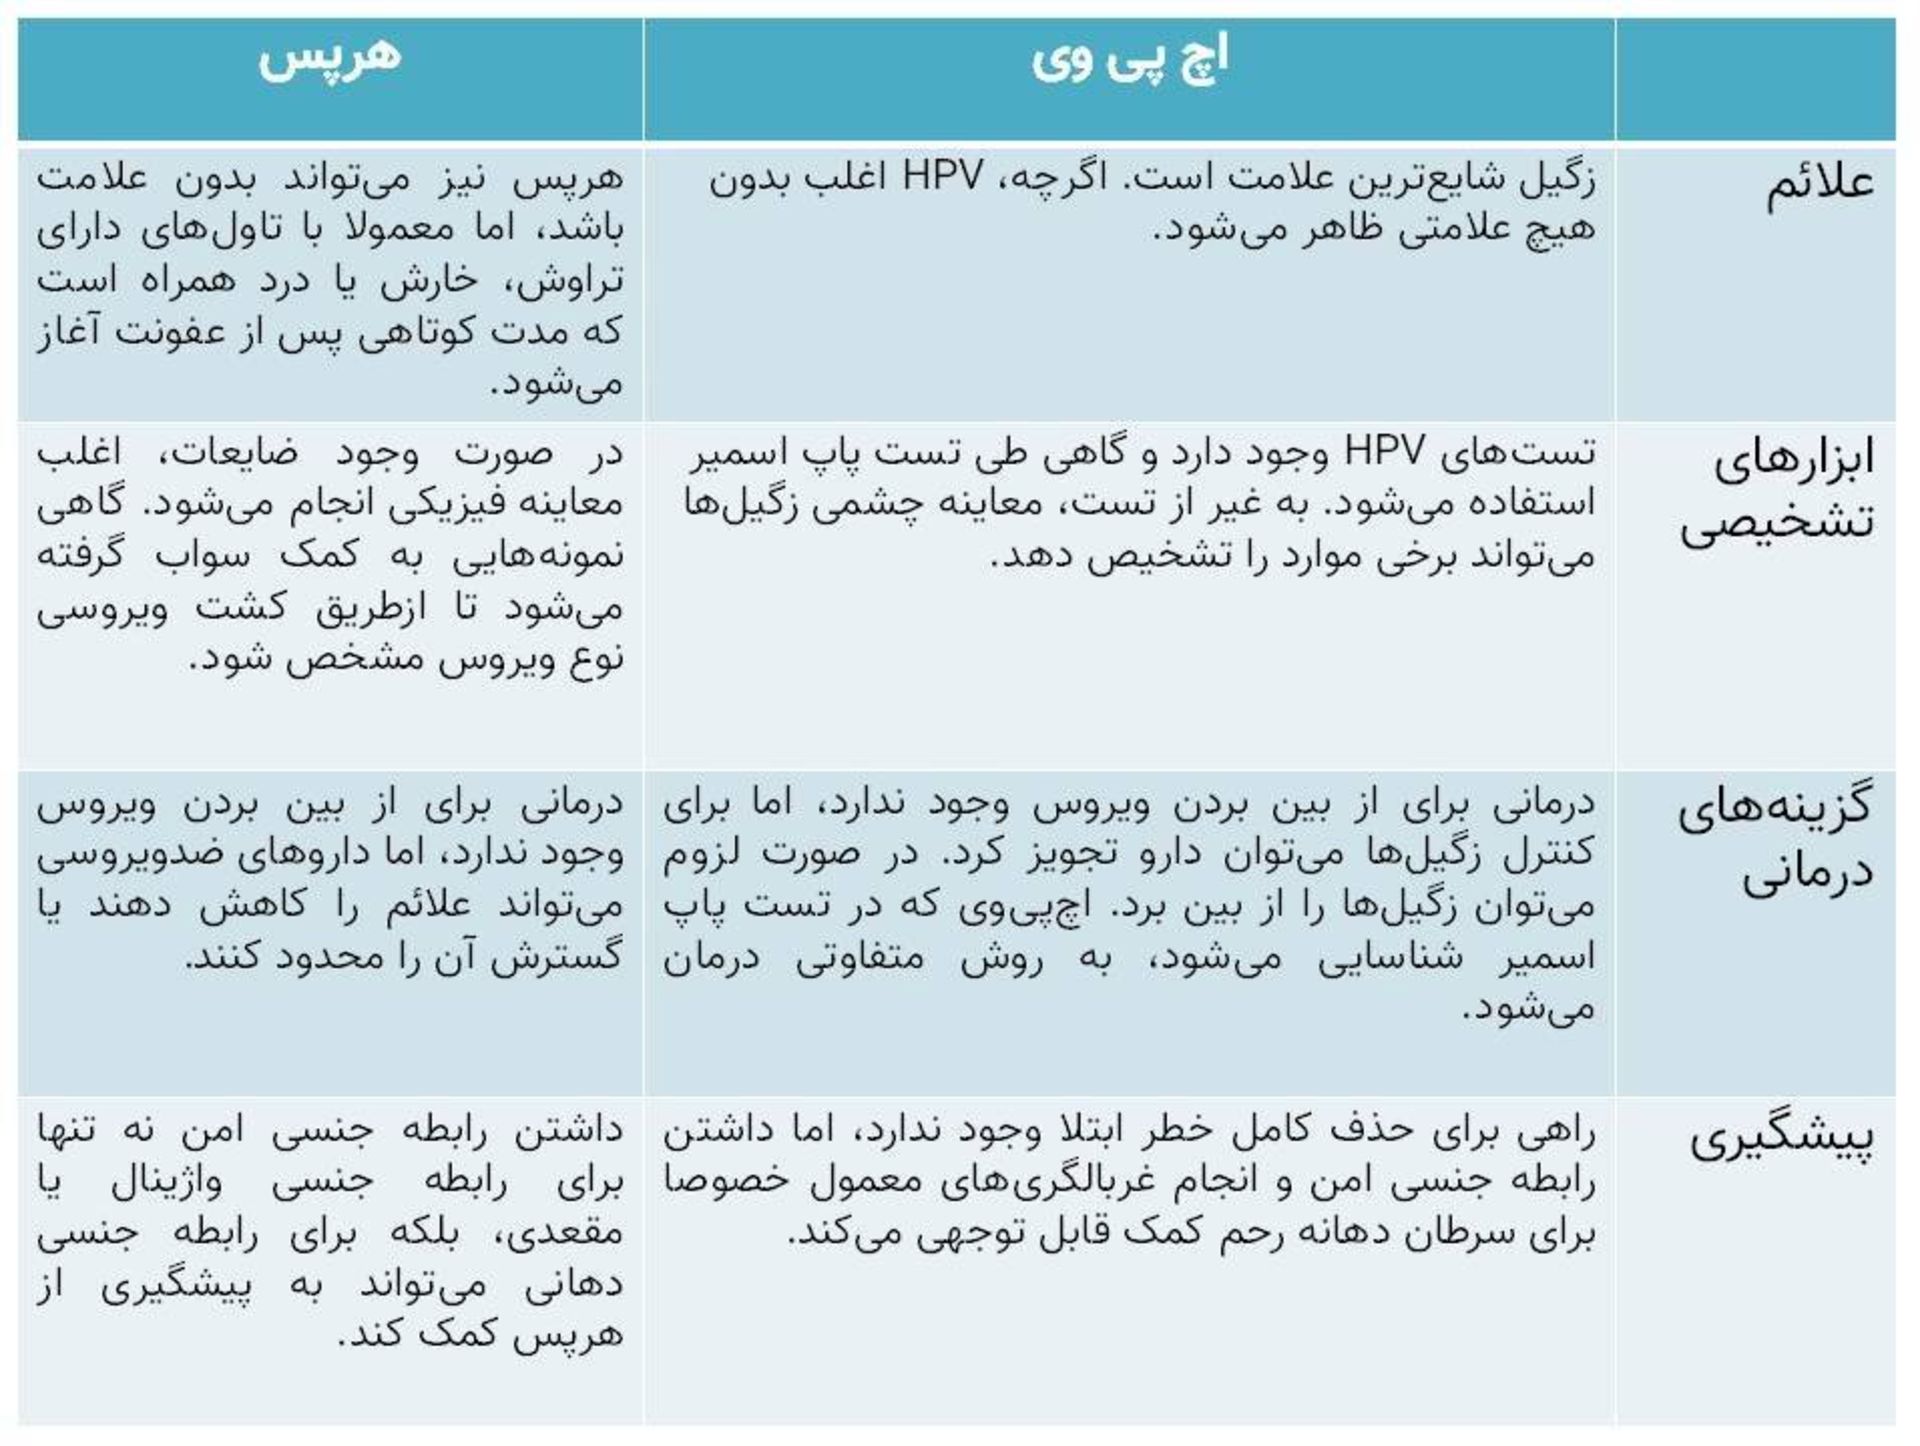 جدول مقایسه اچ پی وی و هرپس / HPV and Herpes